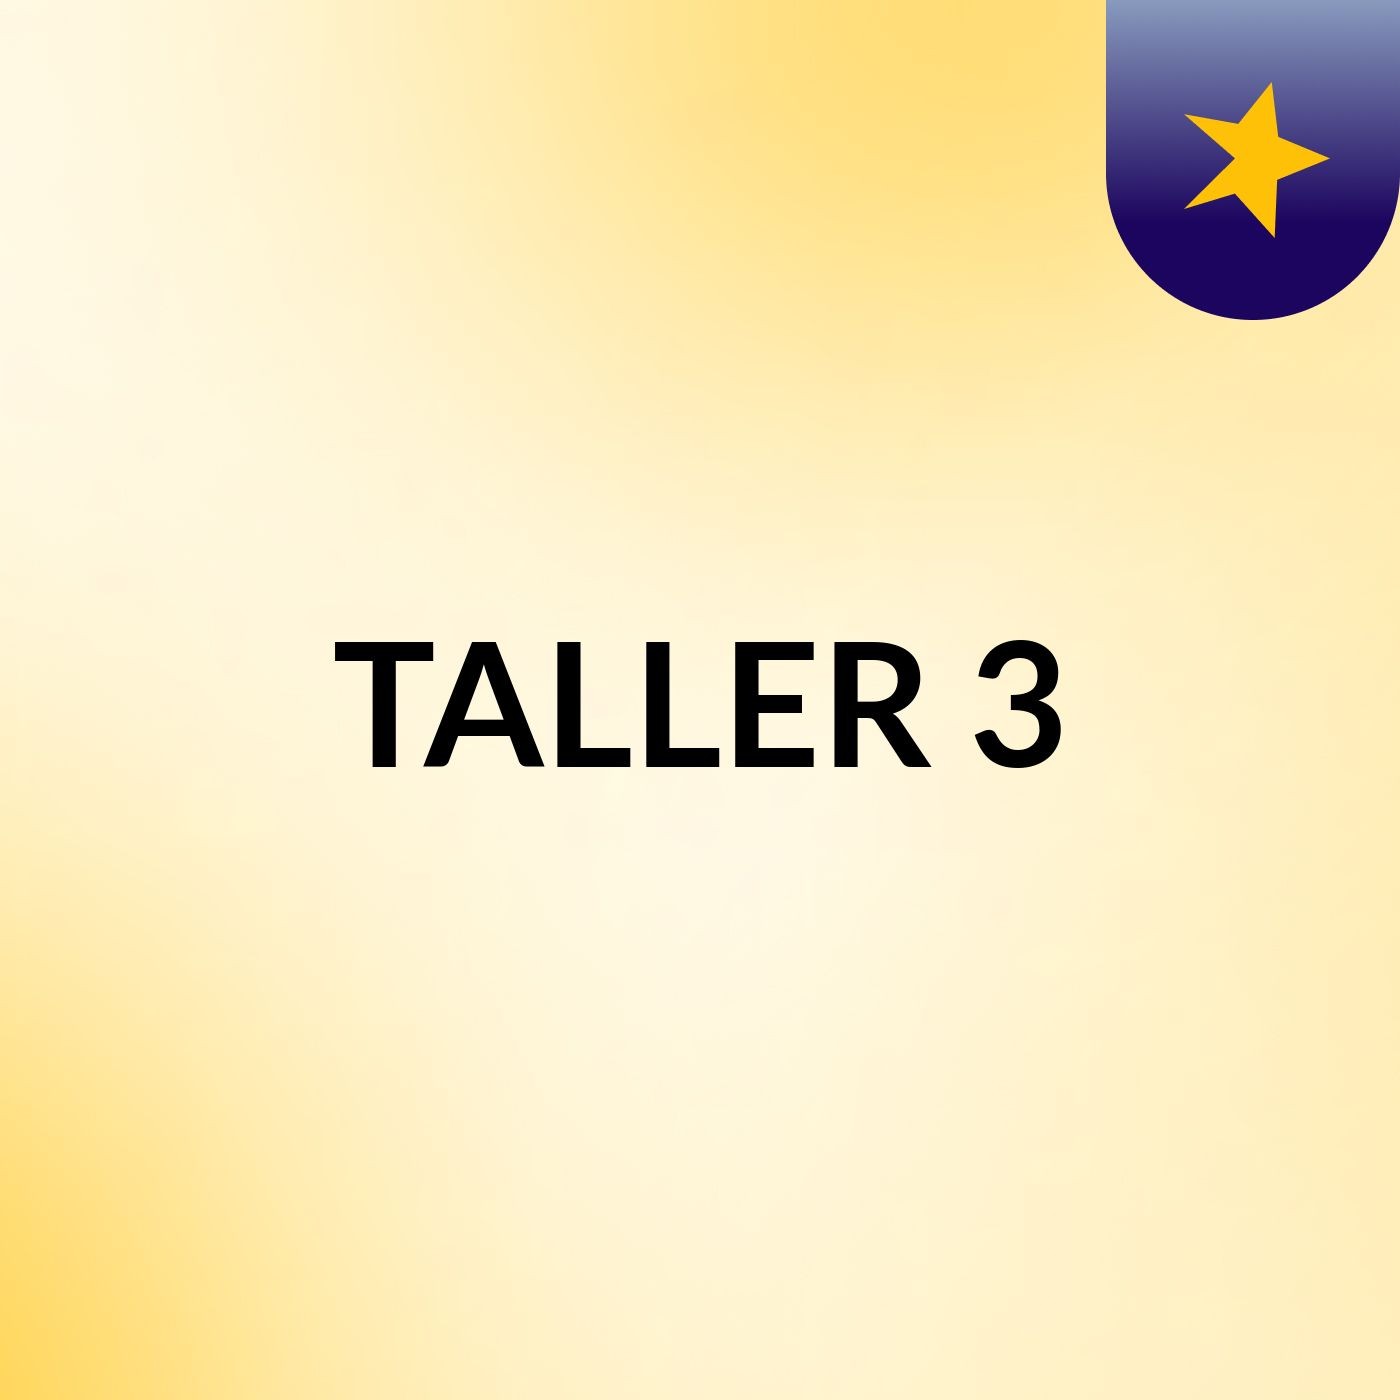 TALLER 3